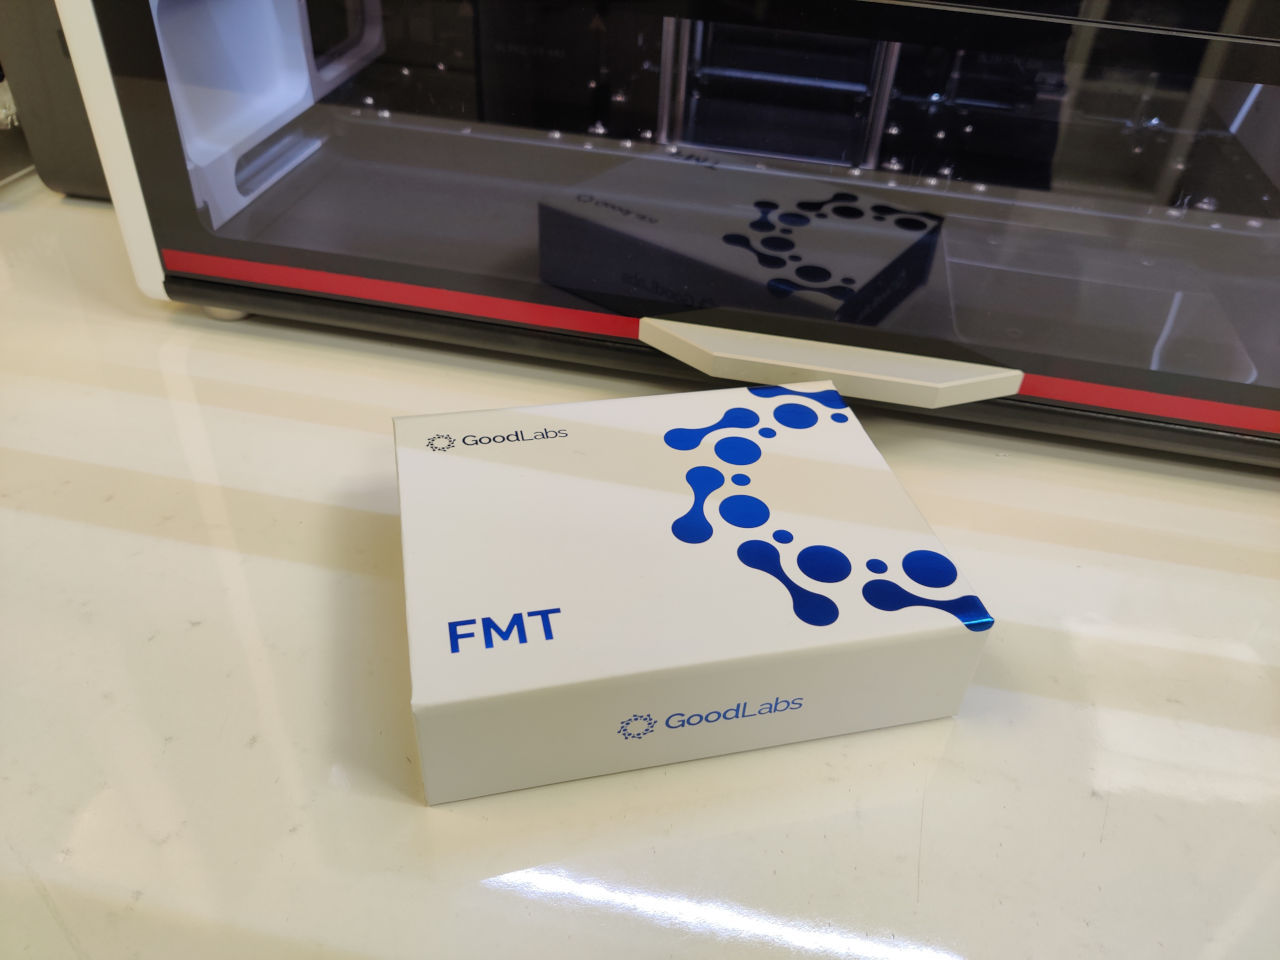 FMT - fekálna mikrobiálna transplantácia od GoodLabs